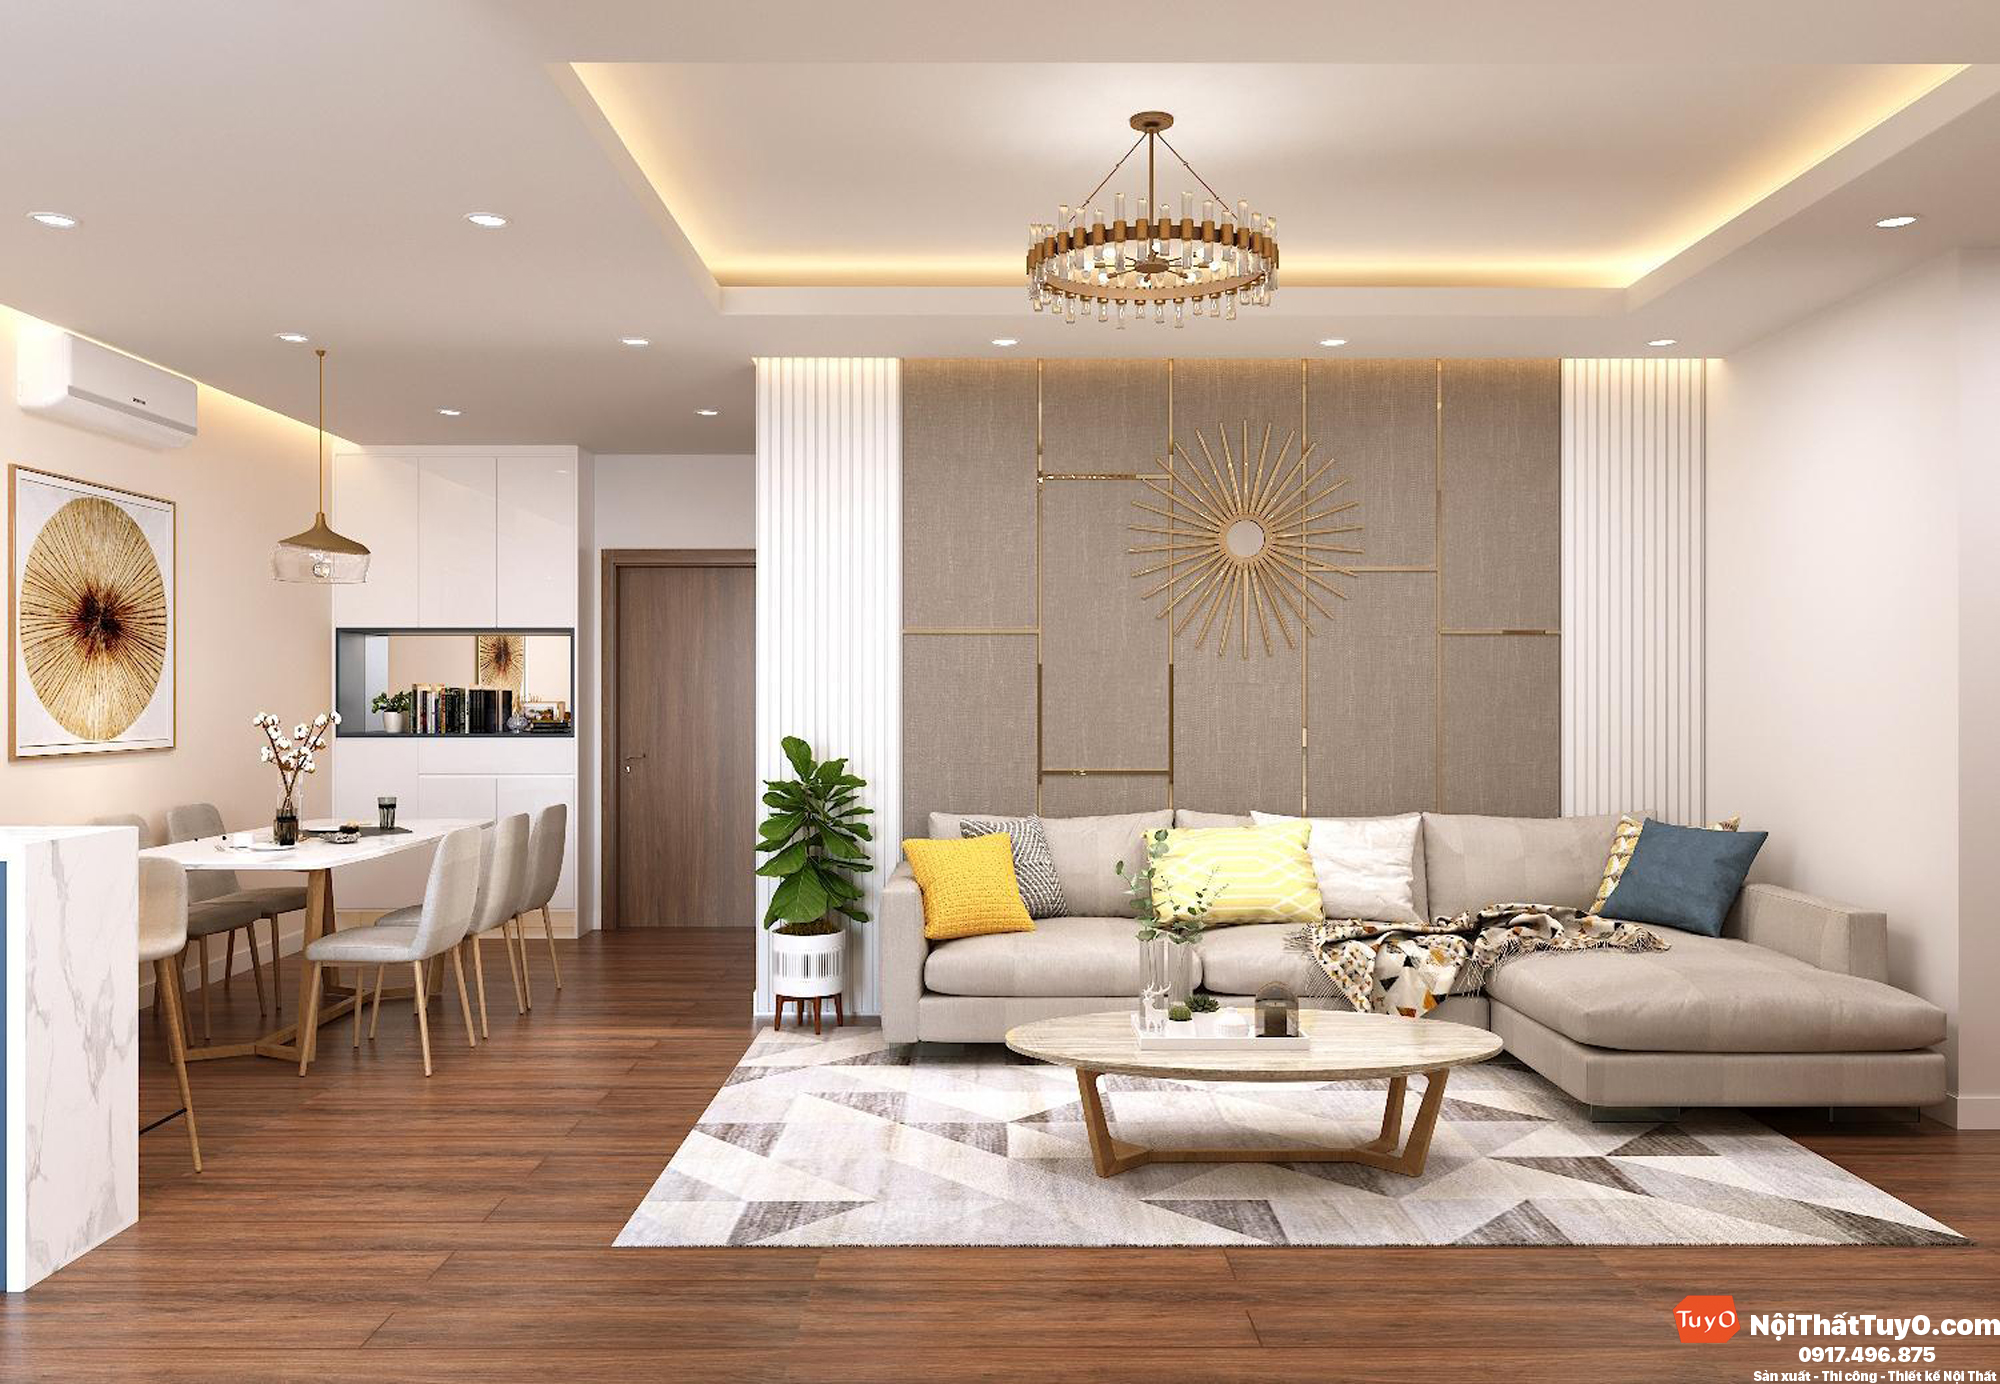 Nội thất TuyO là sự lựa chọn hoàn hảo cho căn hộ của bạn. Thiết kế thông minh cùng chất lượng tốt nhất sẽ mang đến cho bạn một không gian sống hoàn hảo như ý.